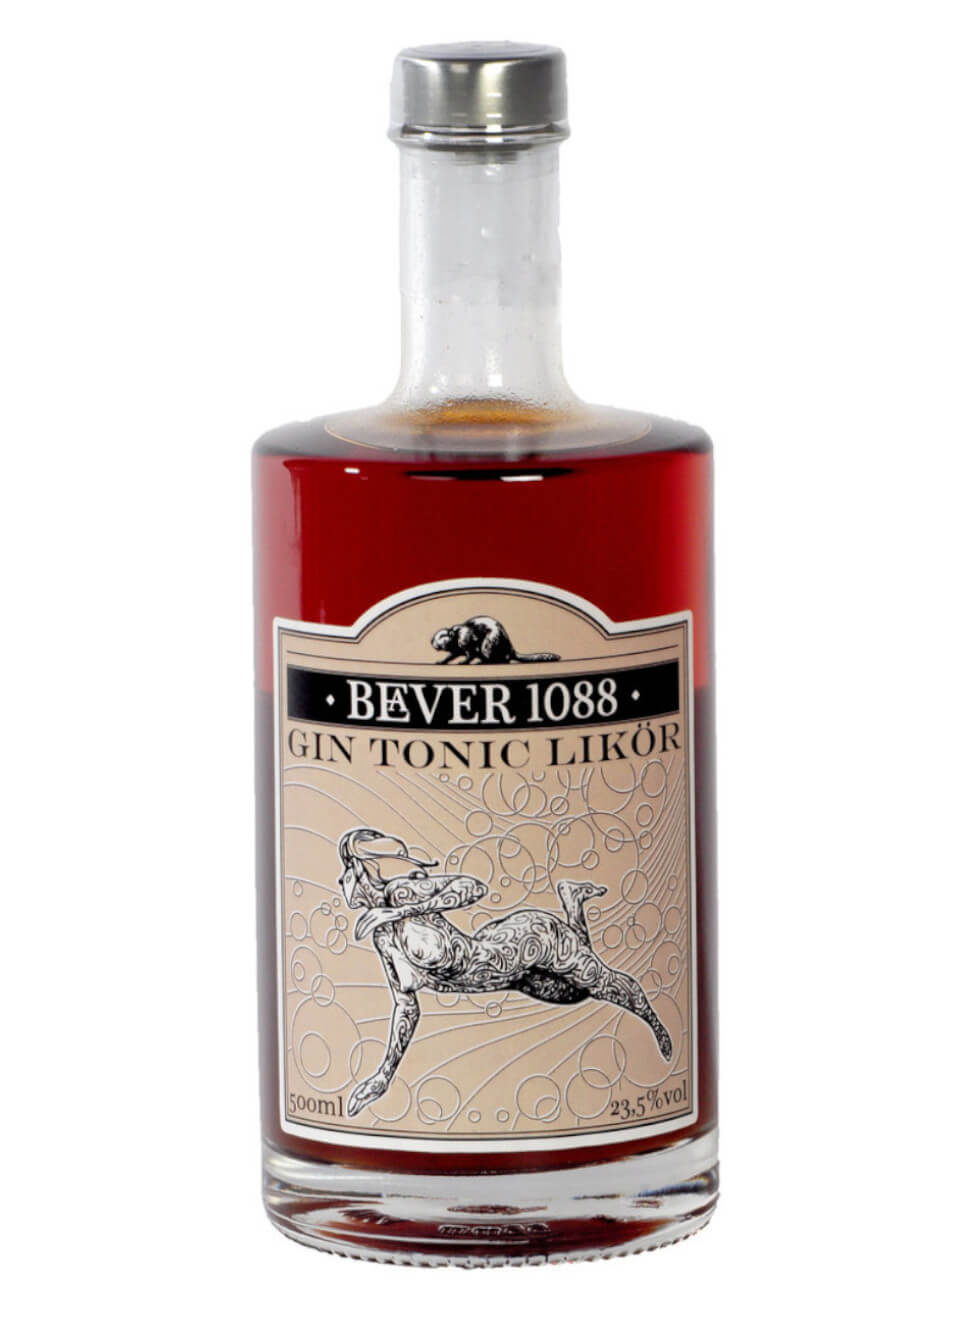 Beaver 1088 Gin Tonic Likör 0,5 L günstig kaufen | Spirituosenworld.de -  Online Shop für Spirituosen und Barzubehör